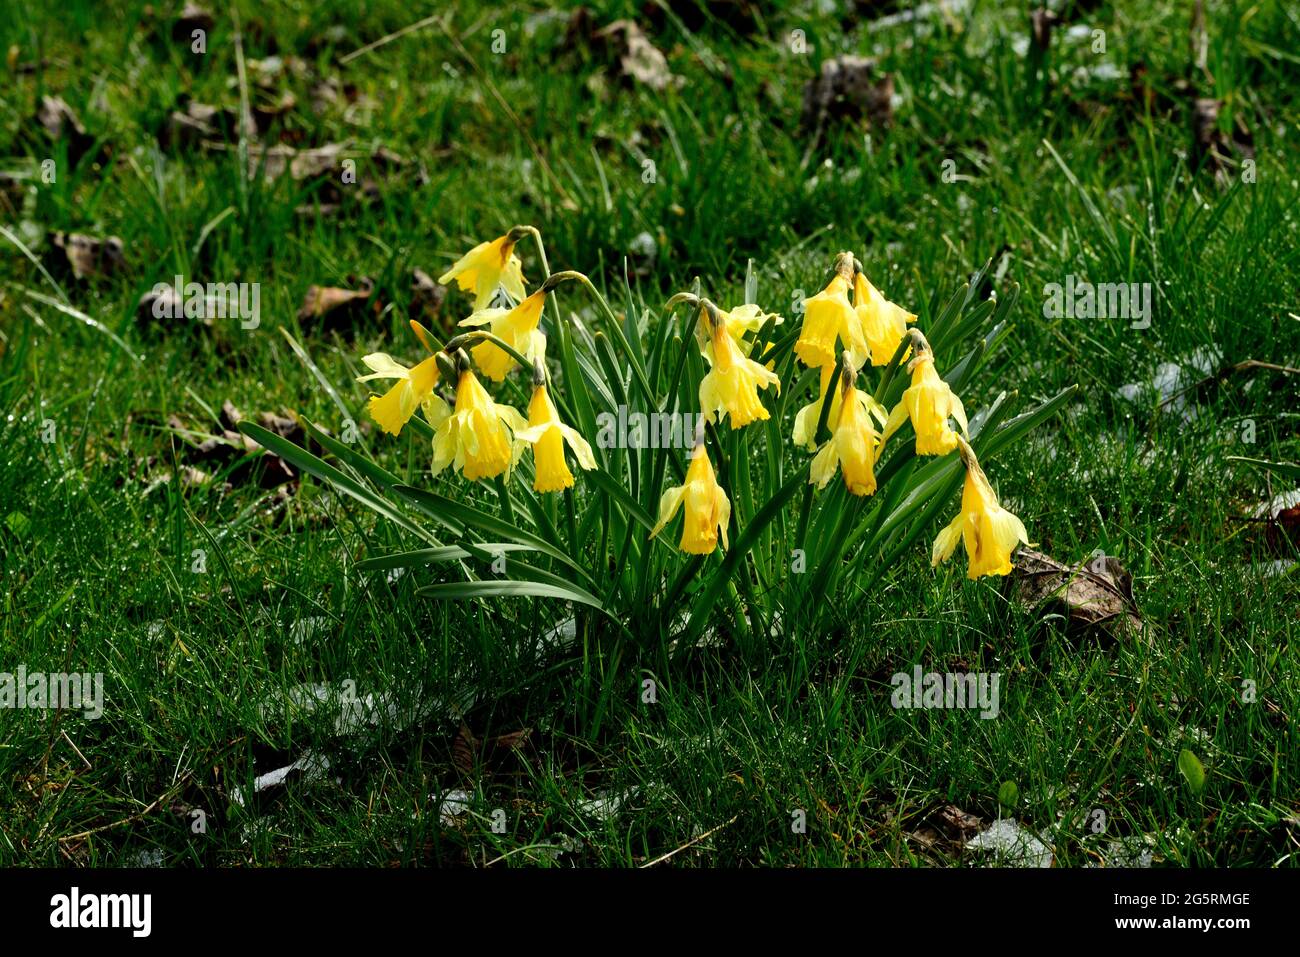 Gelbe Narzisse, Narcissus pseudonarcissus, Amaryllidacae, blühend, Blume, Pflanze, Mont Soleil, Jura-Berg, Kanton Bern, Schweiz Foto de stock